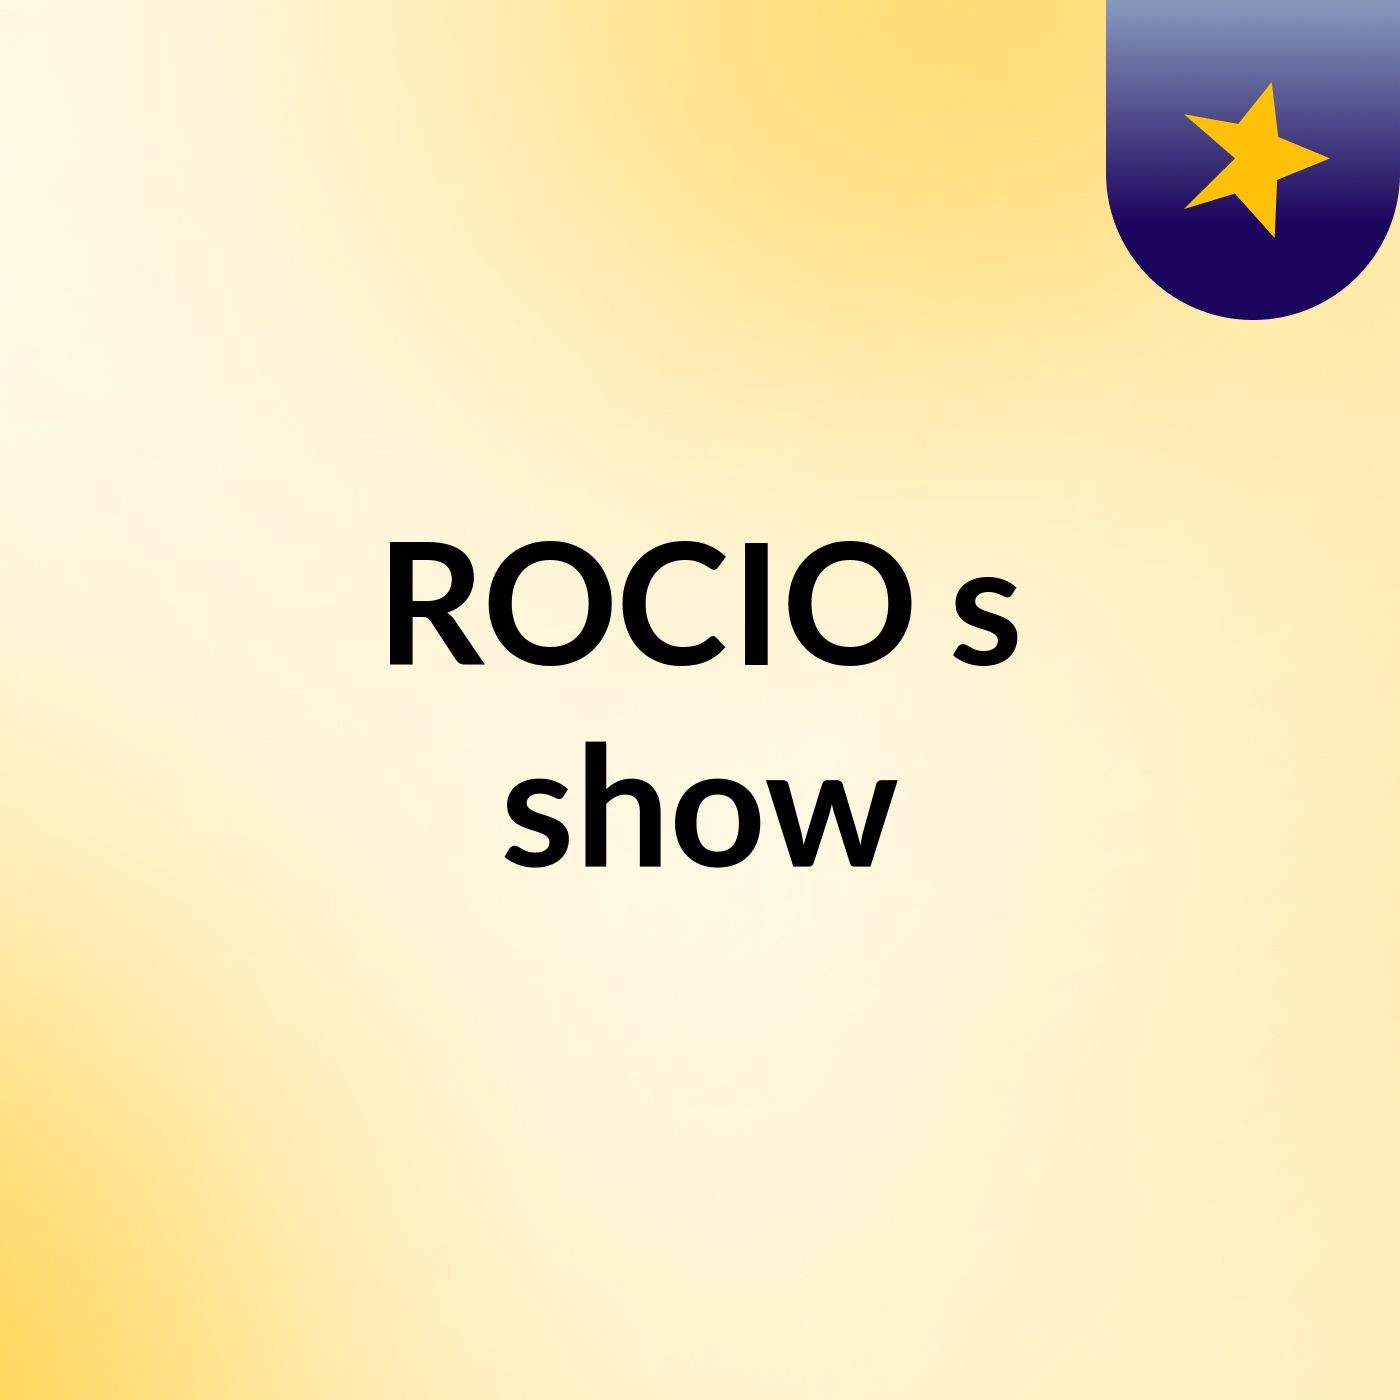 ROCIO's show